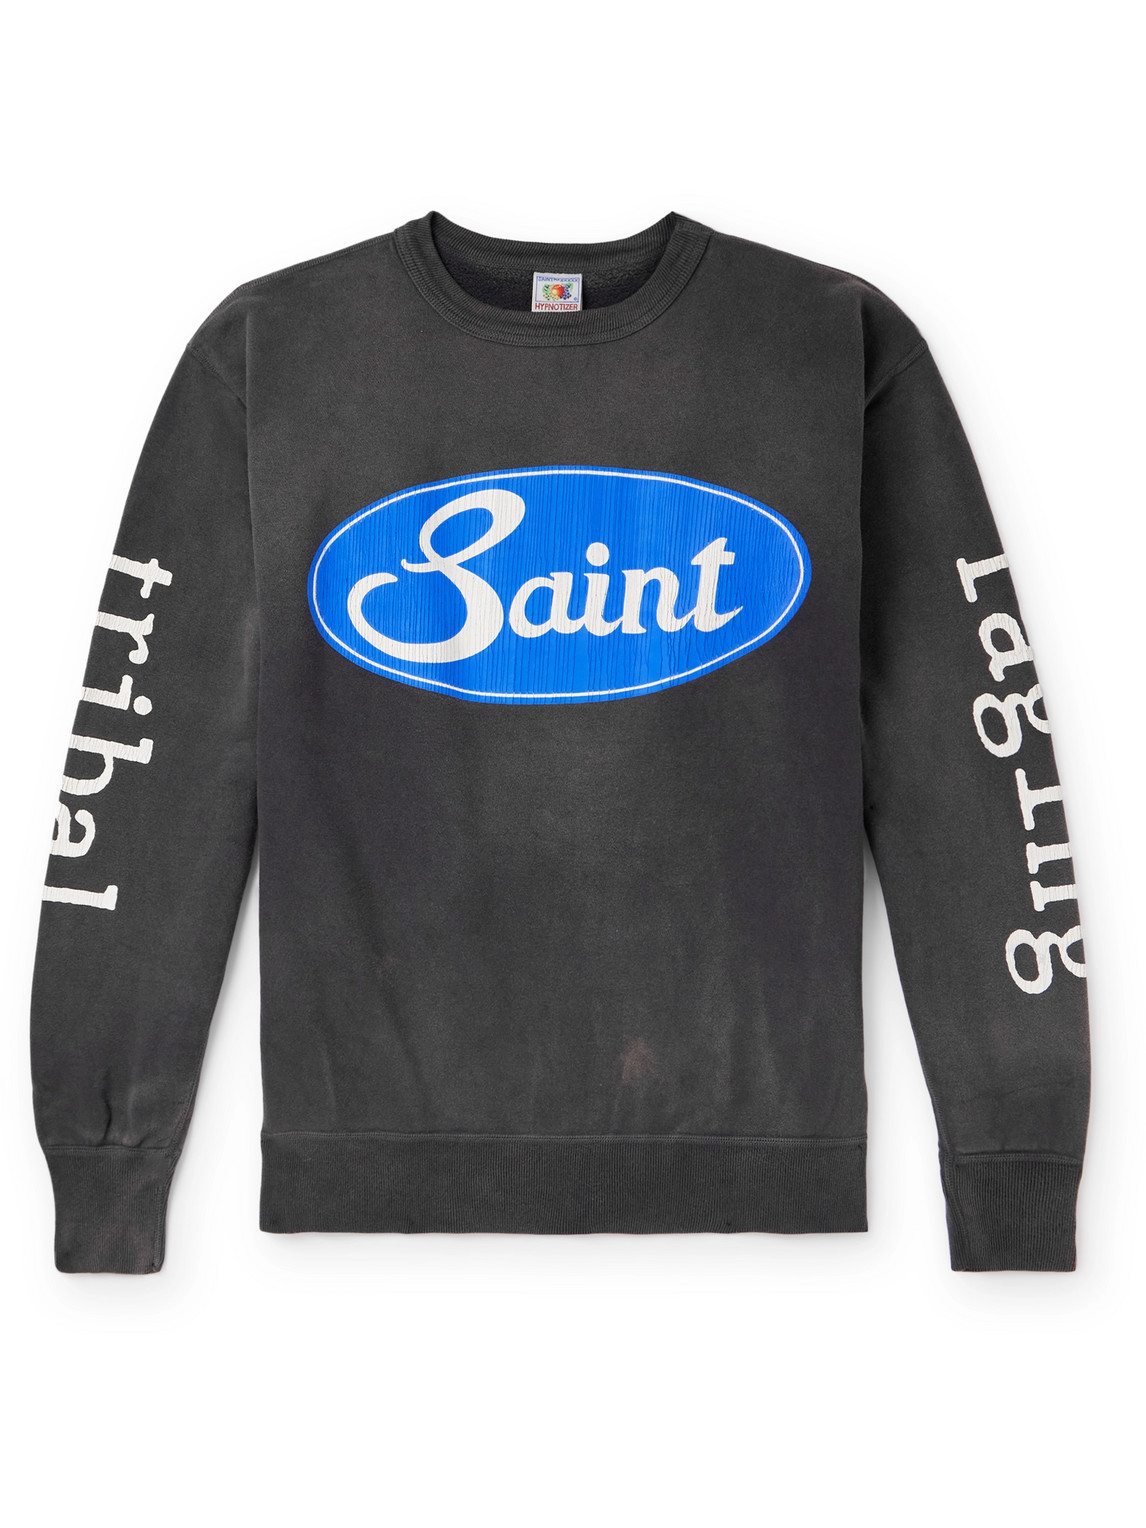 SAINT Mxxxxxx - Logo-Print Distressed Cotton-Jersey Sweatshirt - Men - Gray - M von SAINT Mxxxxxx